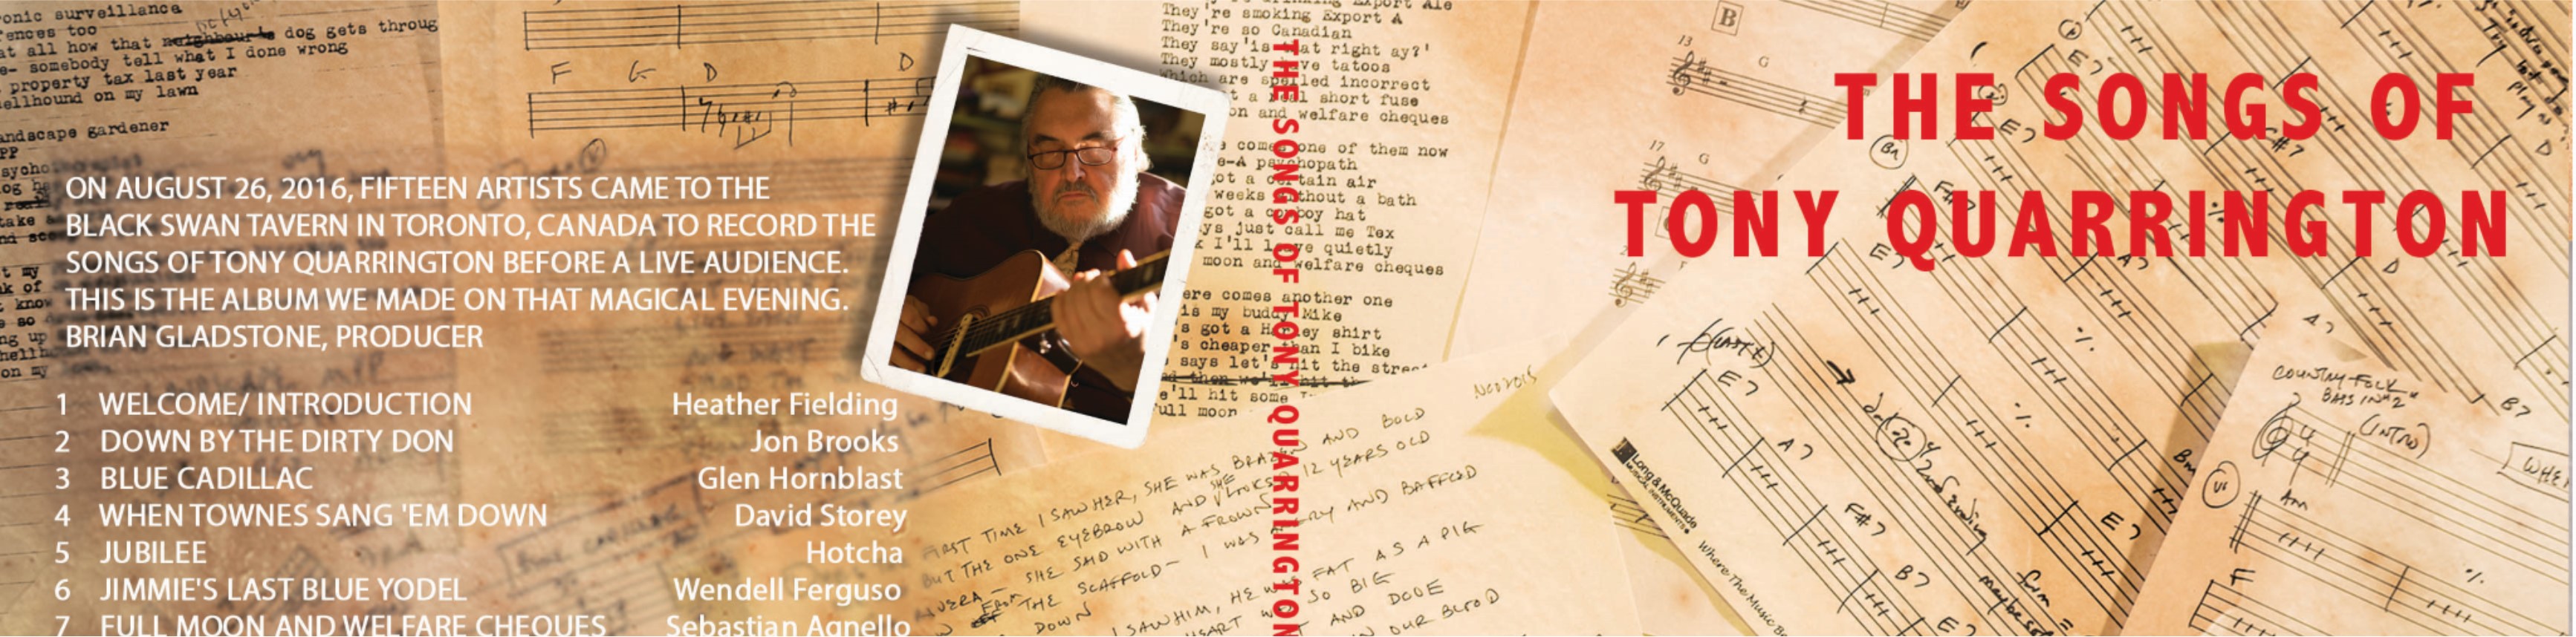 Live Album Release The Songs of Tony Quarrington